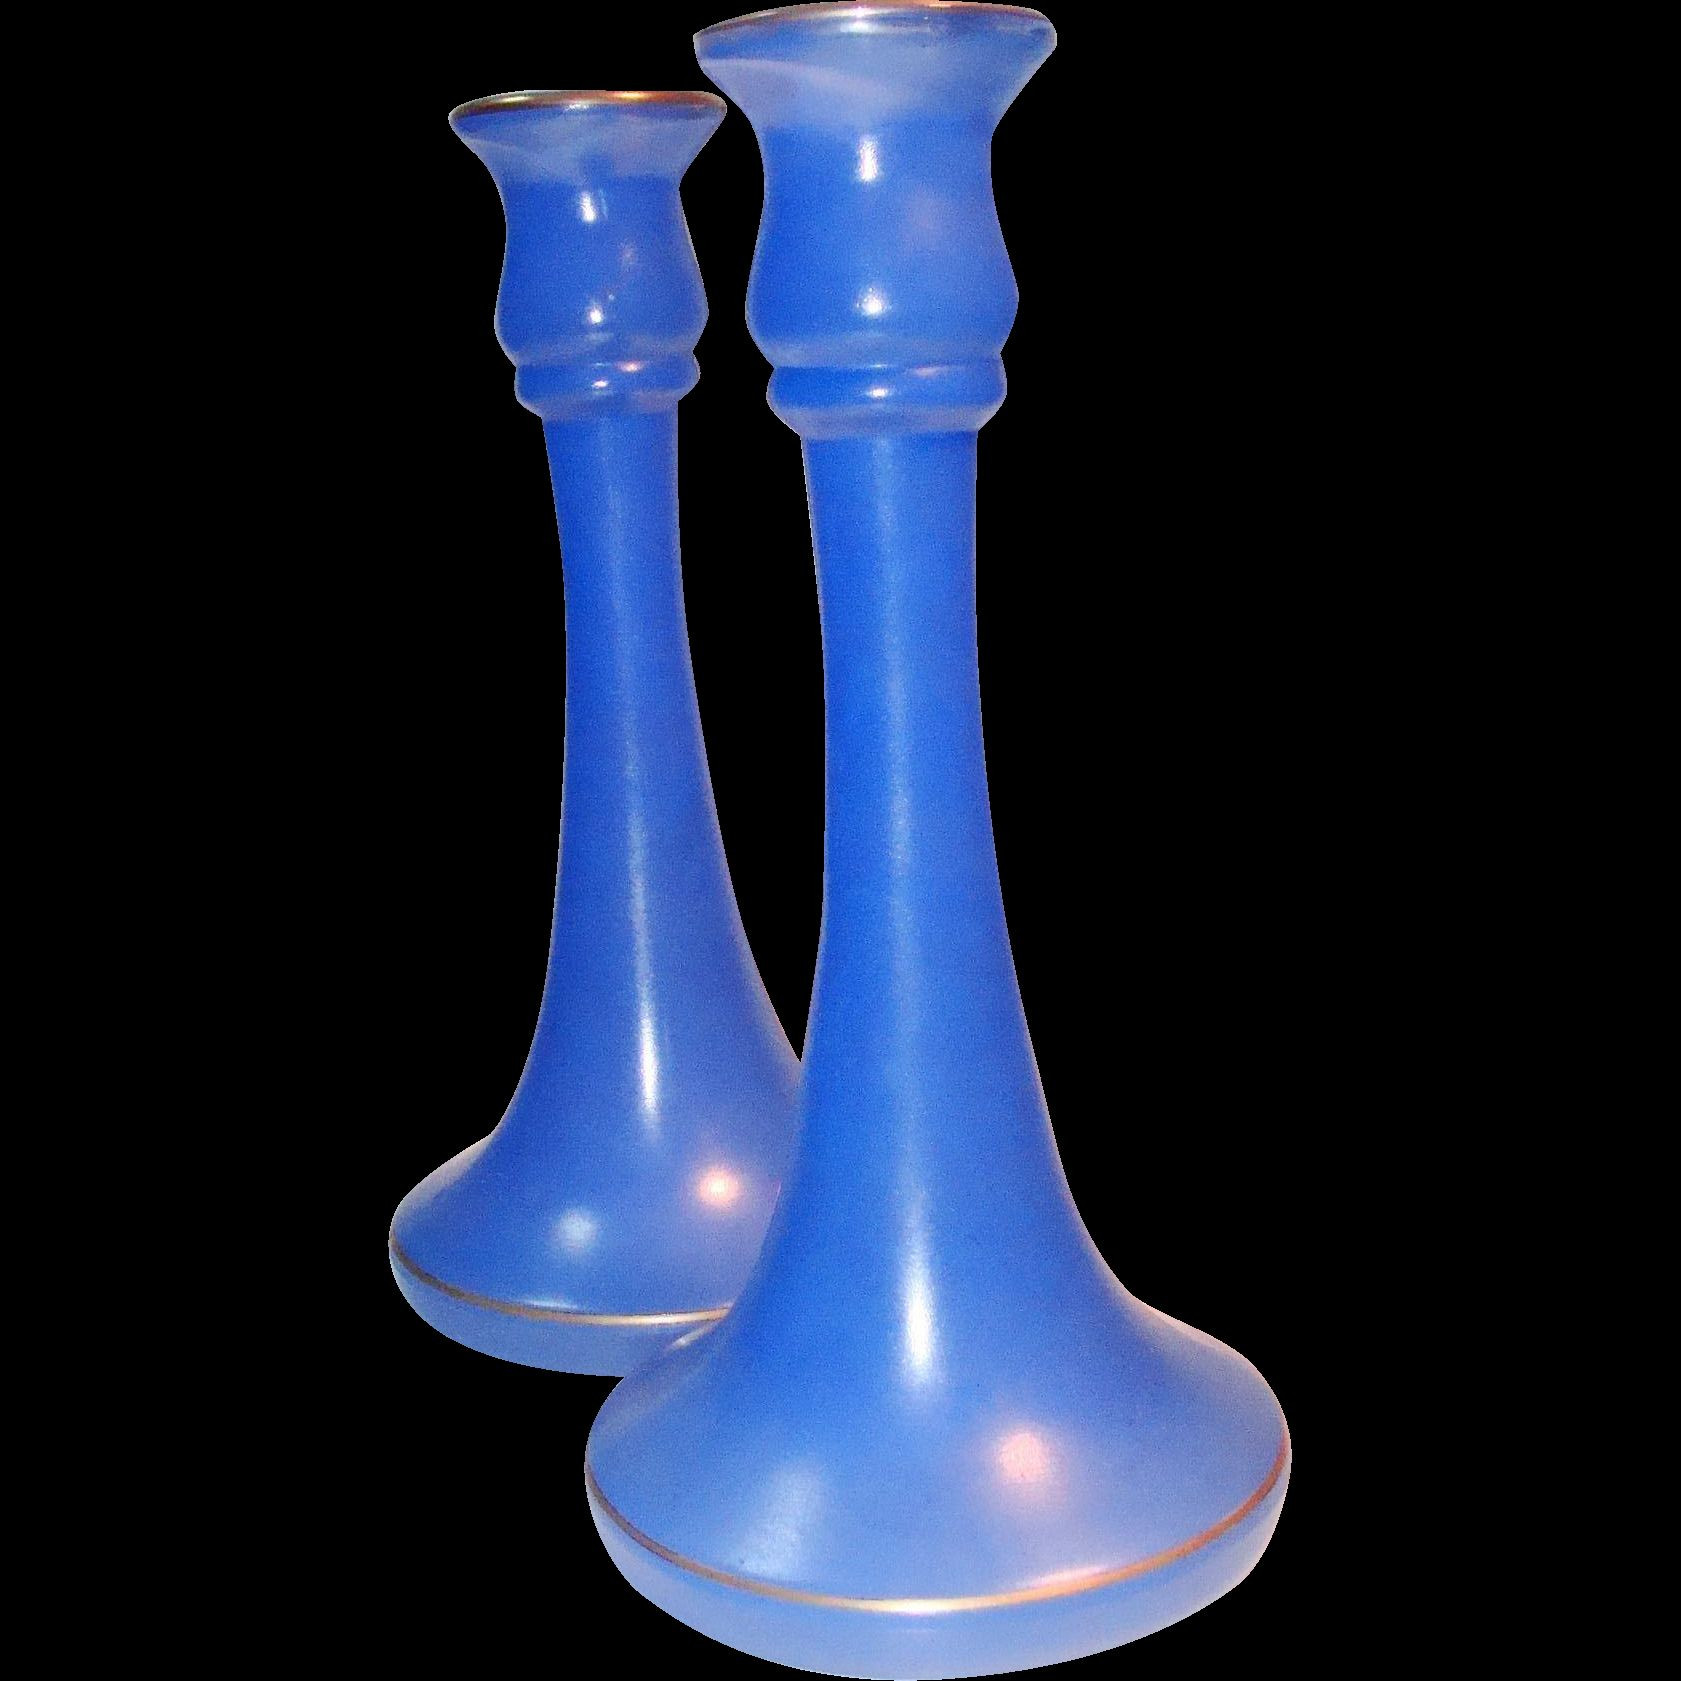 24 Elegant Azure Blue Art Glass Vase 2024 free download azure blue art glass vase of 50 smoked glass vase the weekly world with 50 smoked glass vase